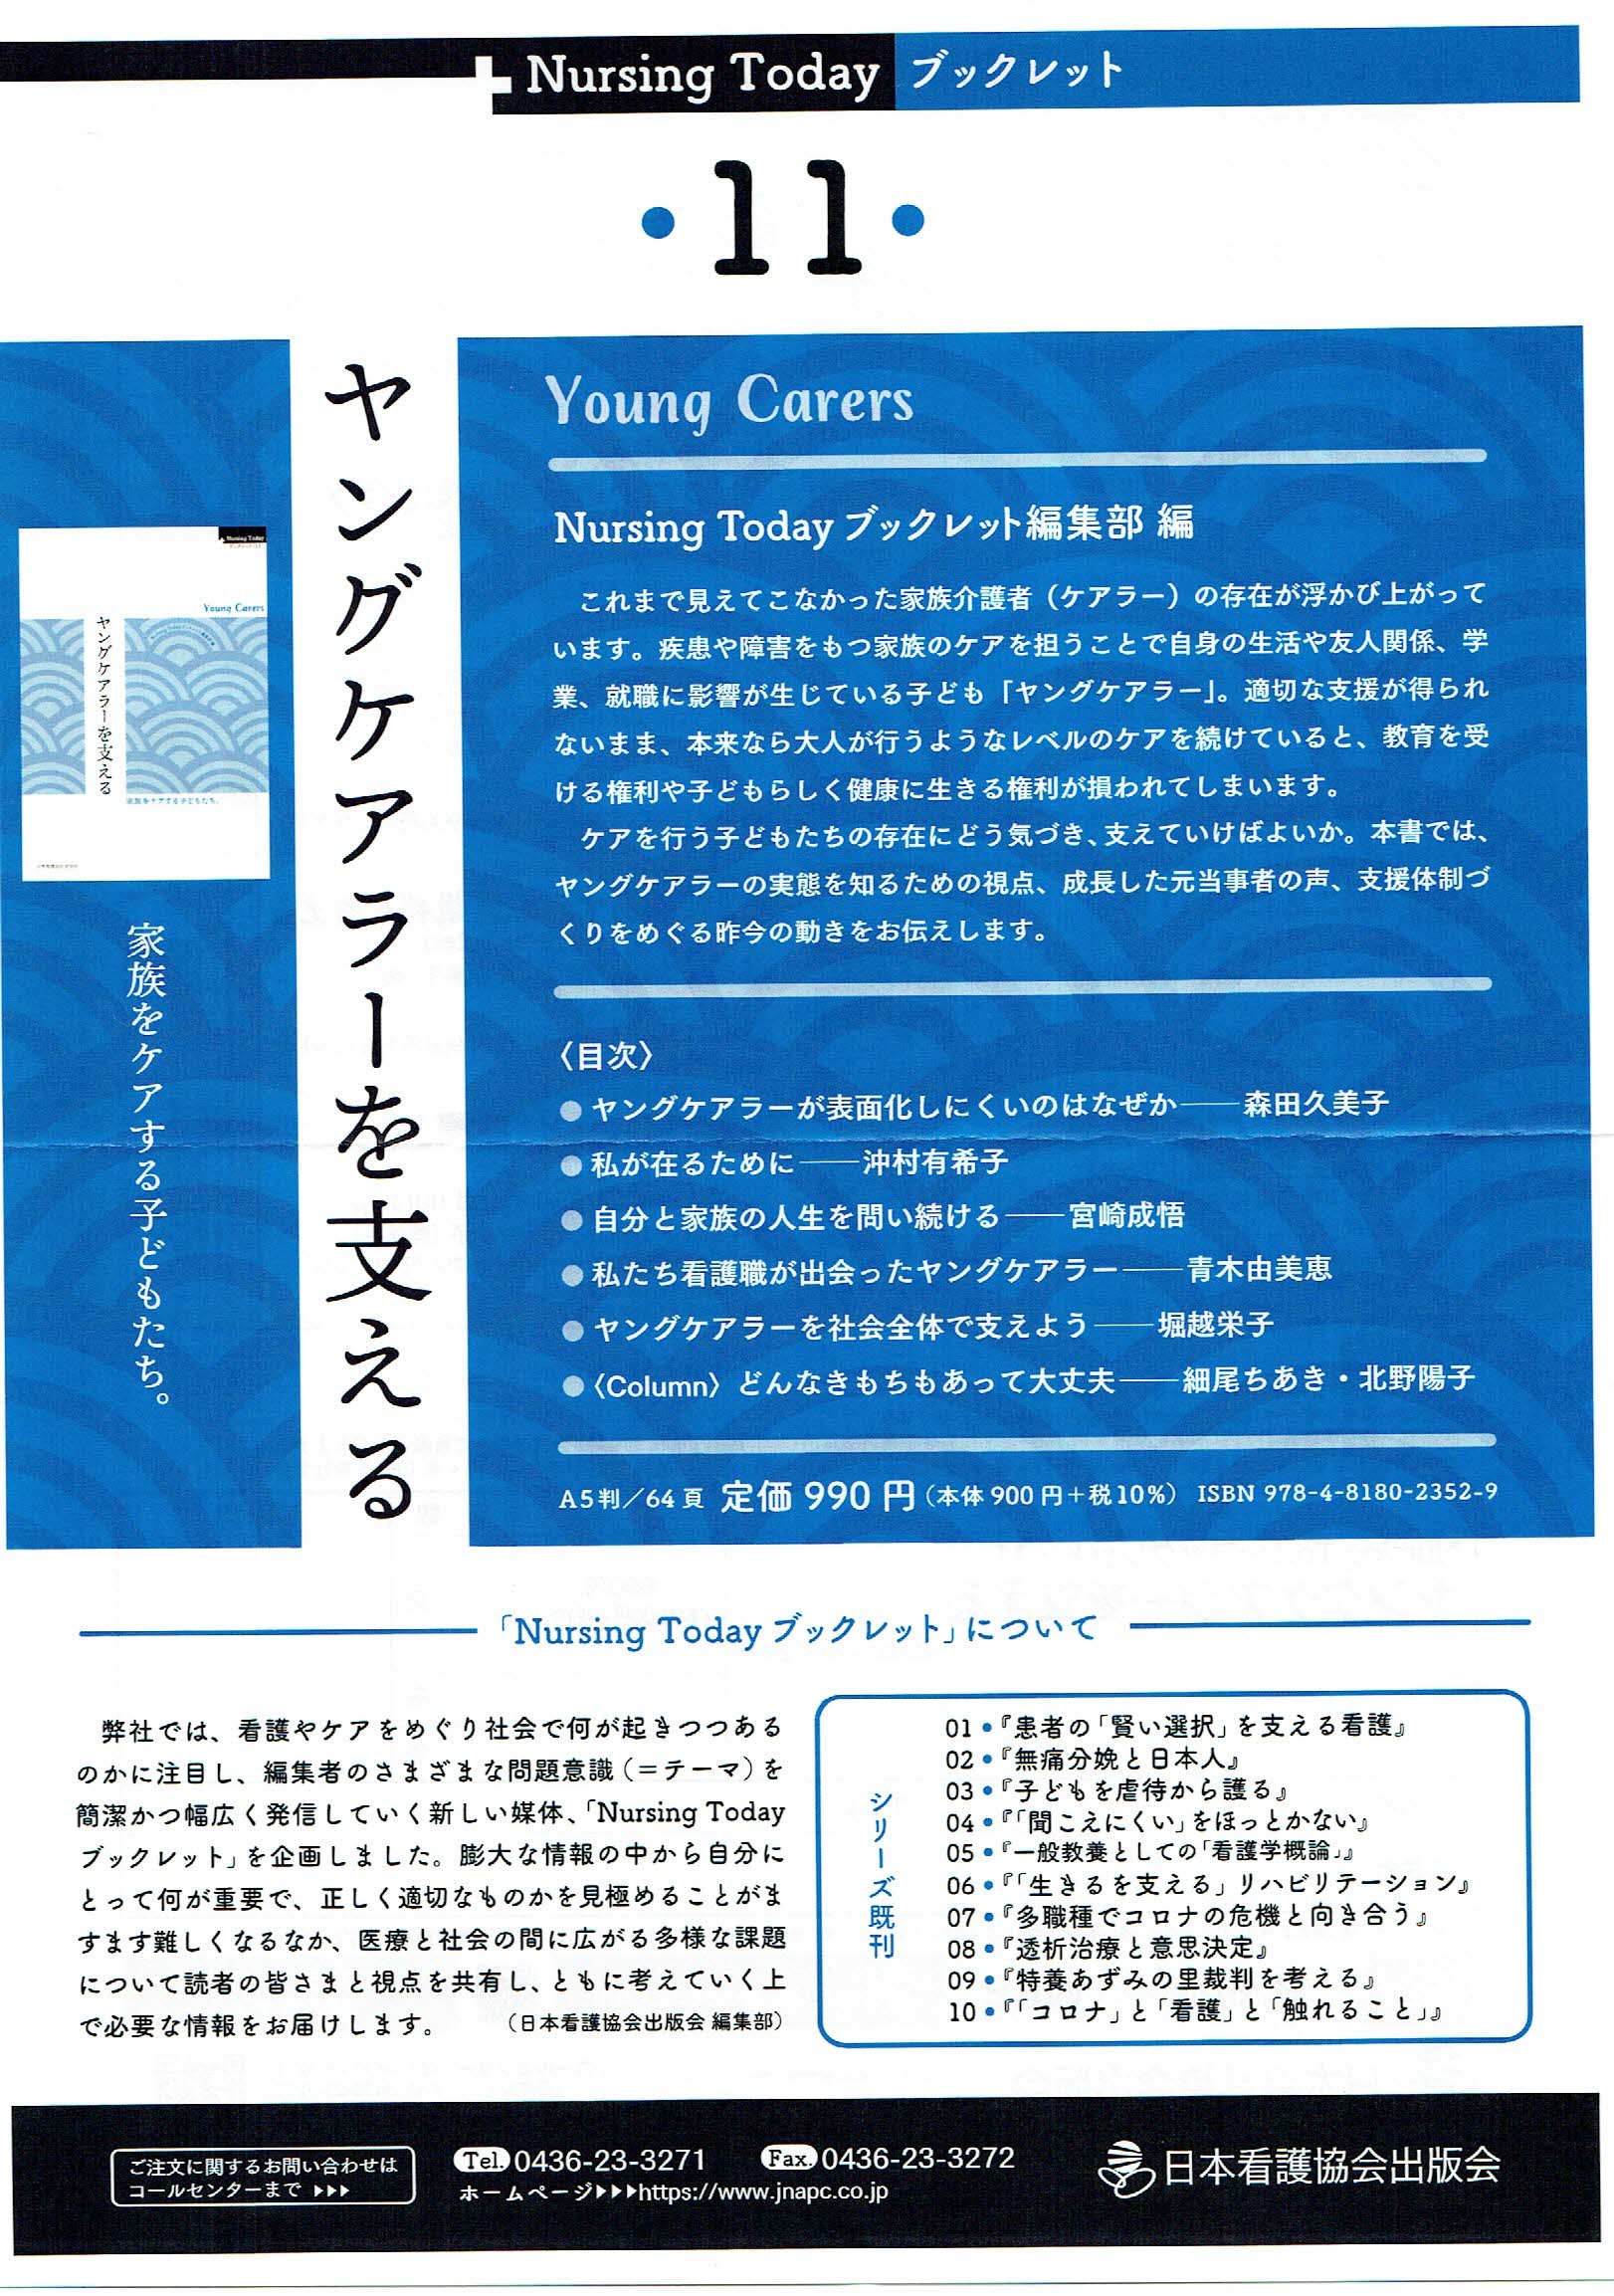 ヤングケアラーを支えるー家族をケアする子どもたち 日本看護協会出版社 21年9月発行 にコラムを書きました 子ども情報ステーションby ぷるすあるは